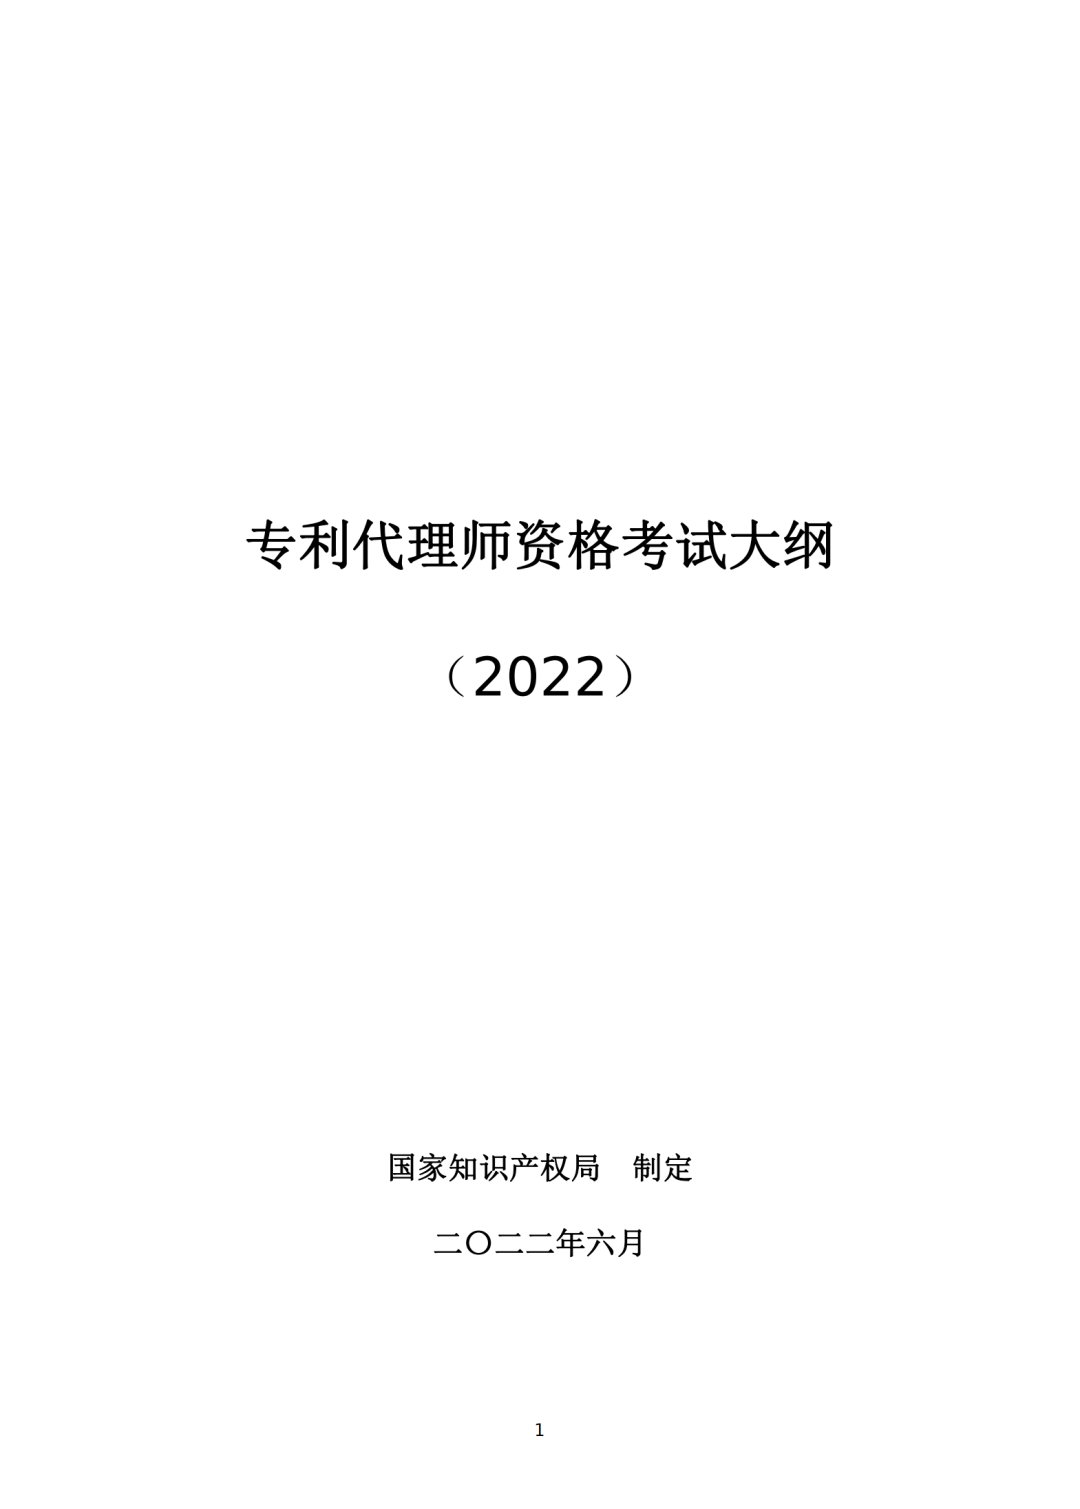 专利代理师资格考试大纲（2022）全文发布！  ​